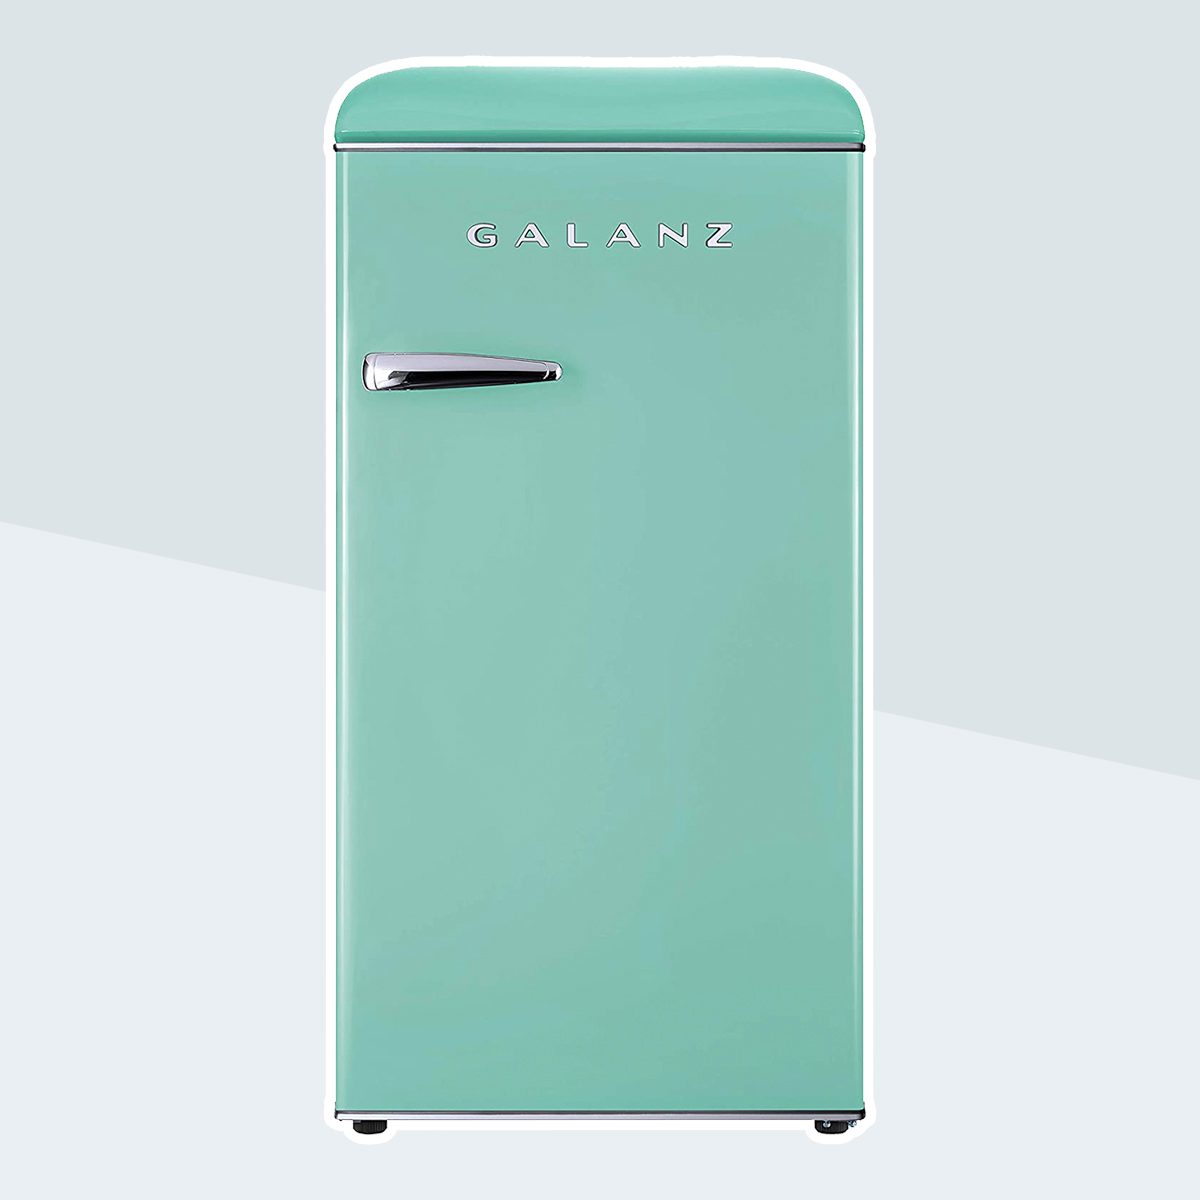 格兰仕GLR33MGNR10复古紧凑型冰箱，单门冰箱，可调节机械恒温器，绿色，3.3立方英尺